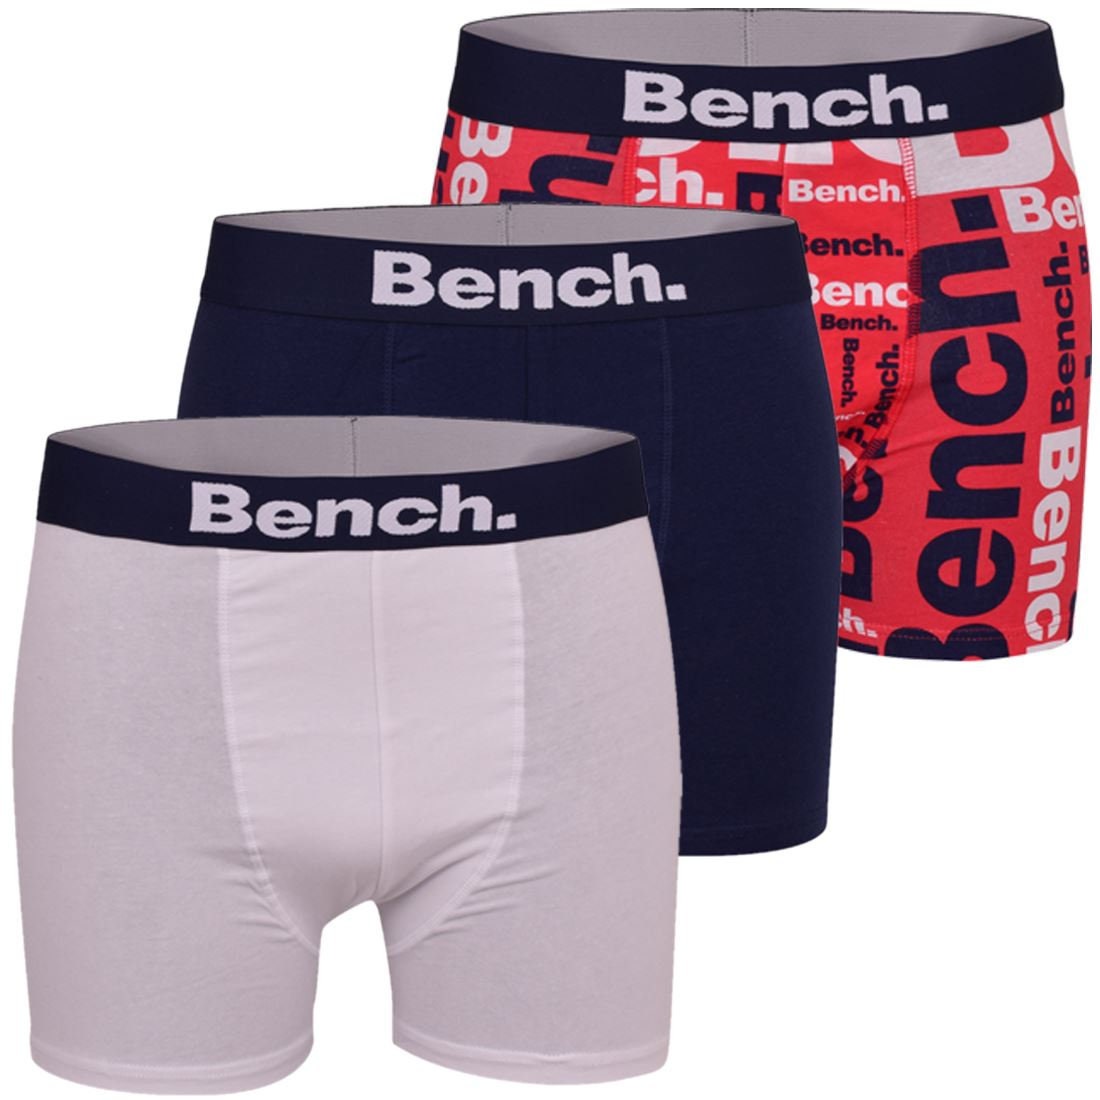 3 Pack Bench Designer Boxers Underwear Trunk Boxer Shorts Under